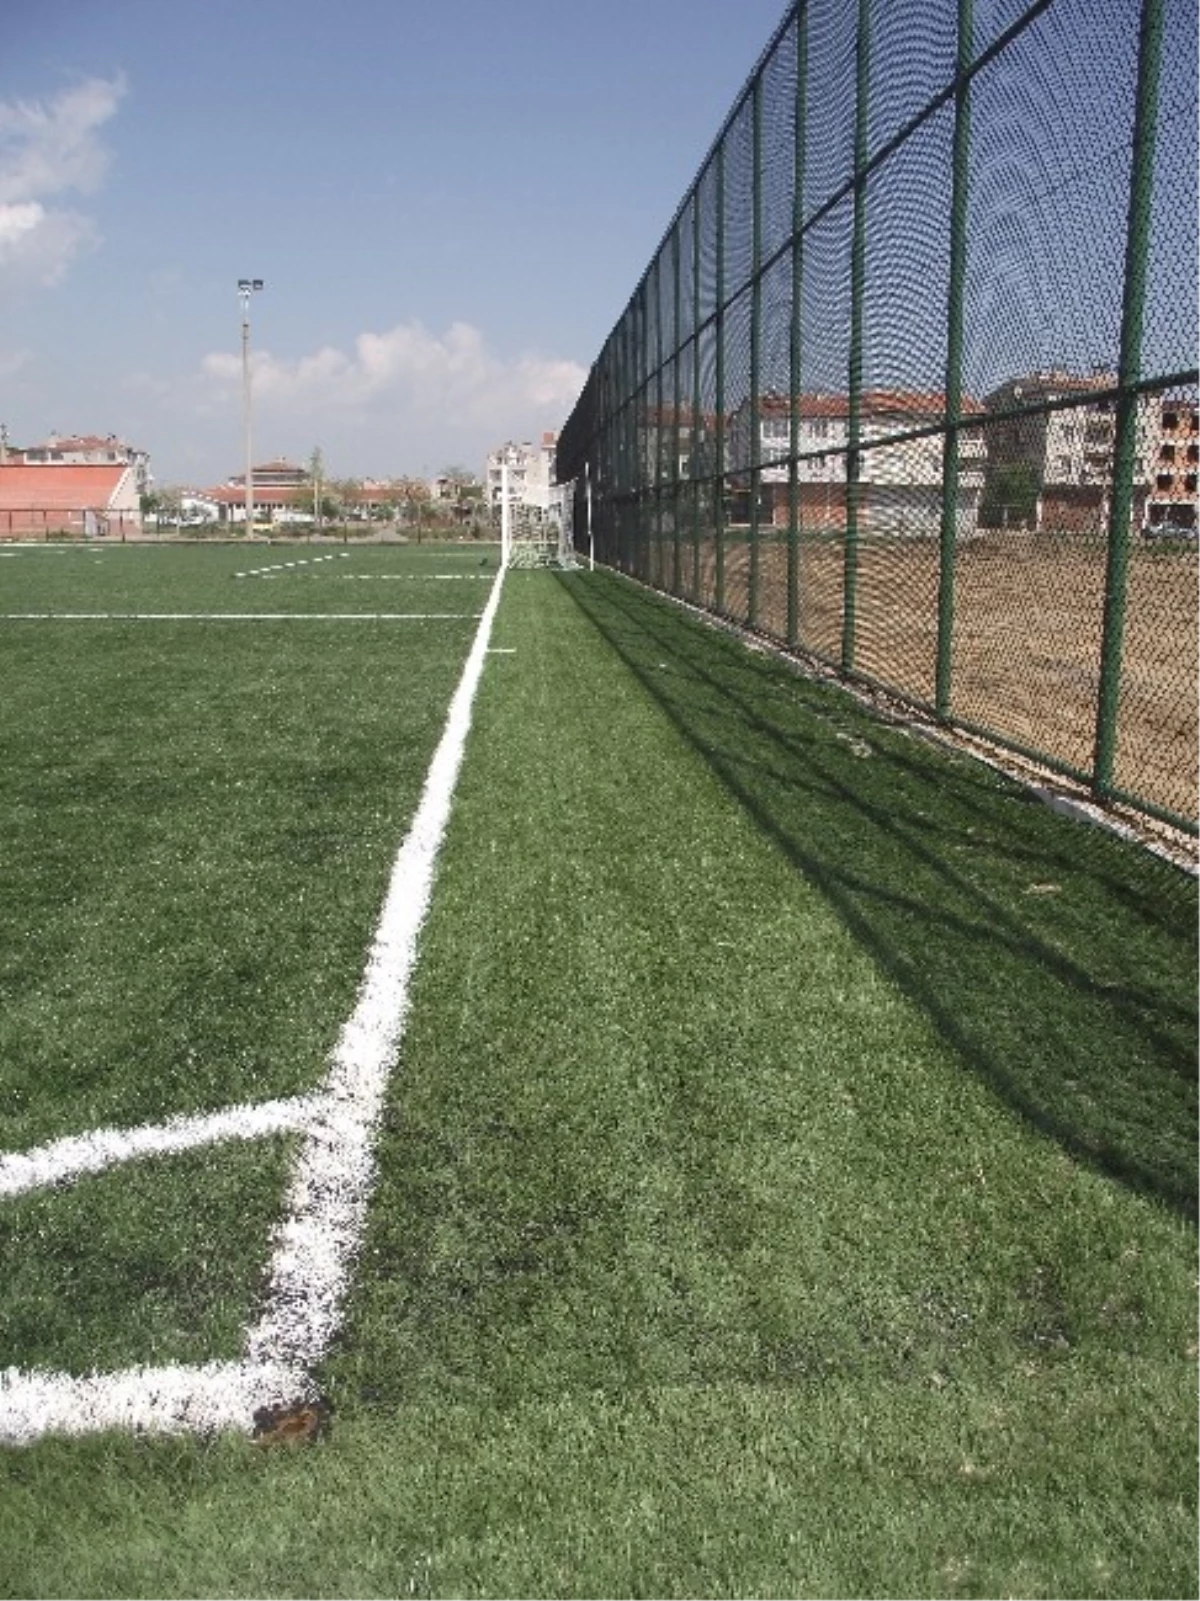 Muratlı İlçe Spor Güvenlik Kurulu Atatürk Stadyumuna El Attı